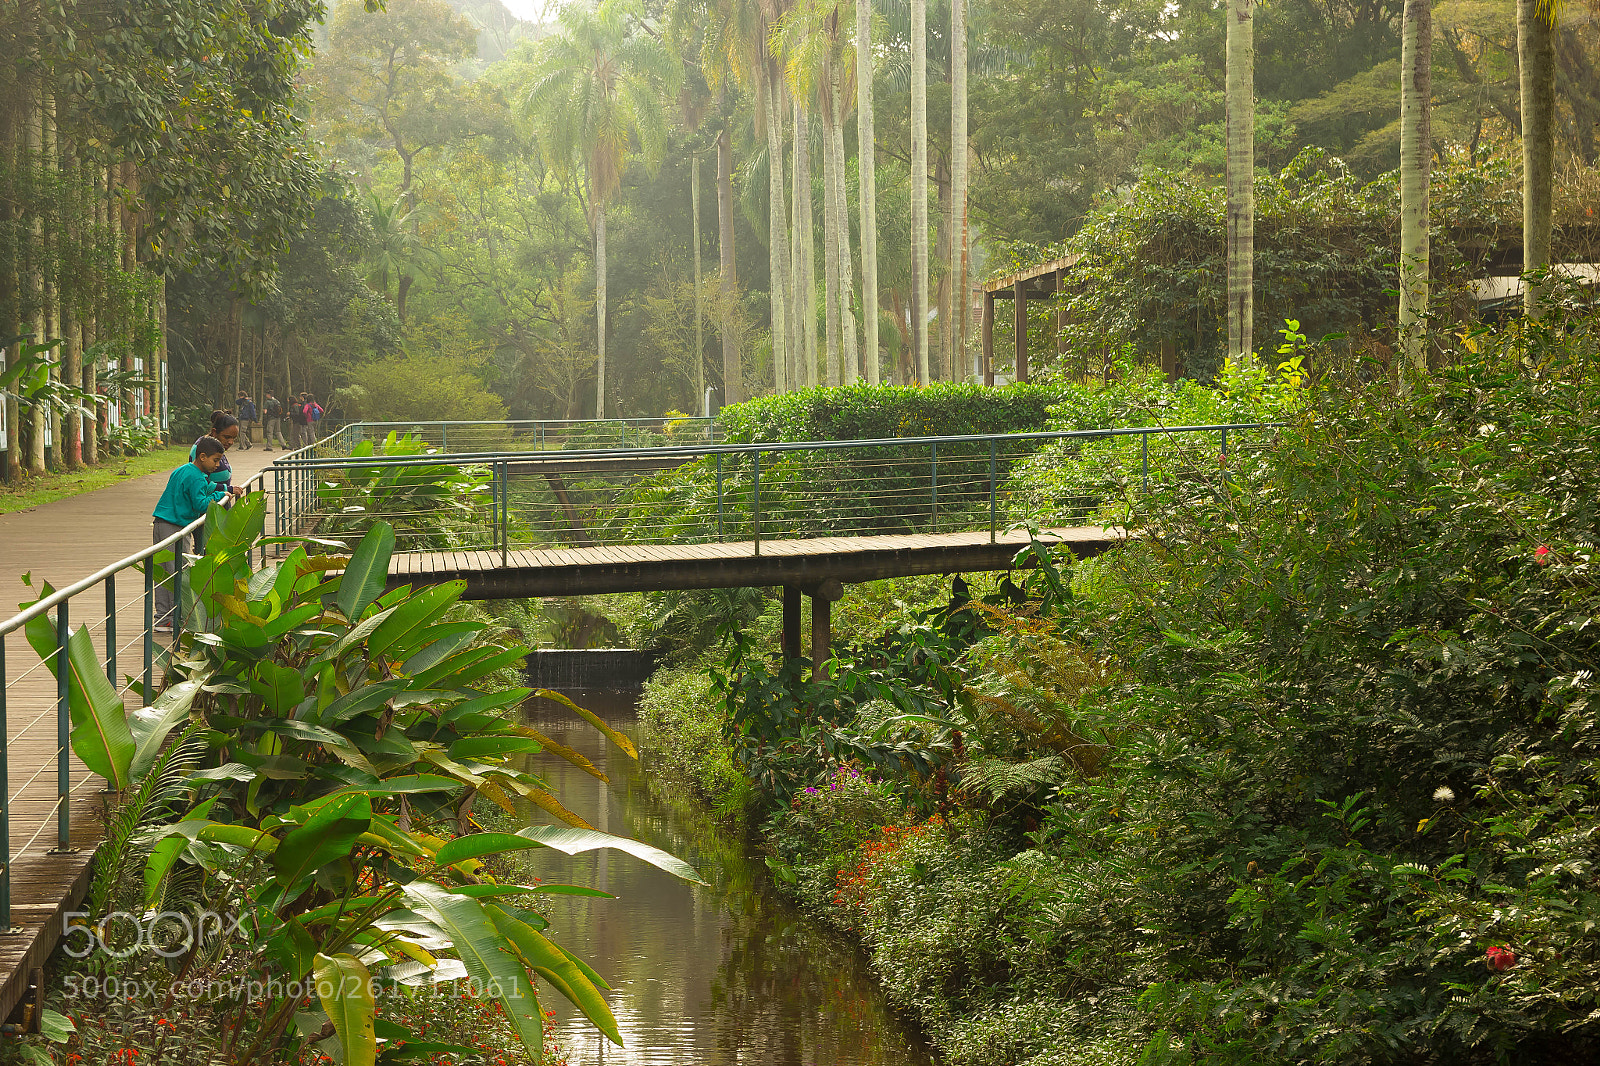 Canon EOS 550D (EOS Rebel T2i / EOS Kiss X4) sample photo. Botanical garden of brazil photography